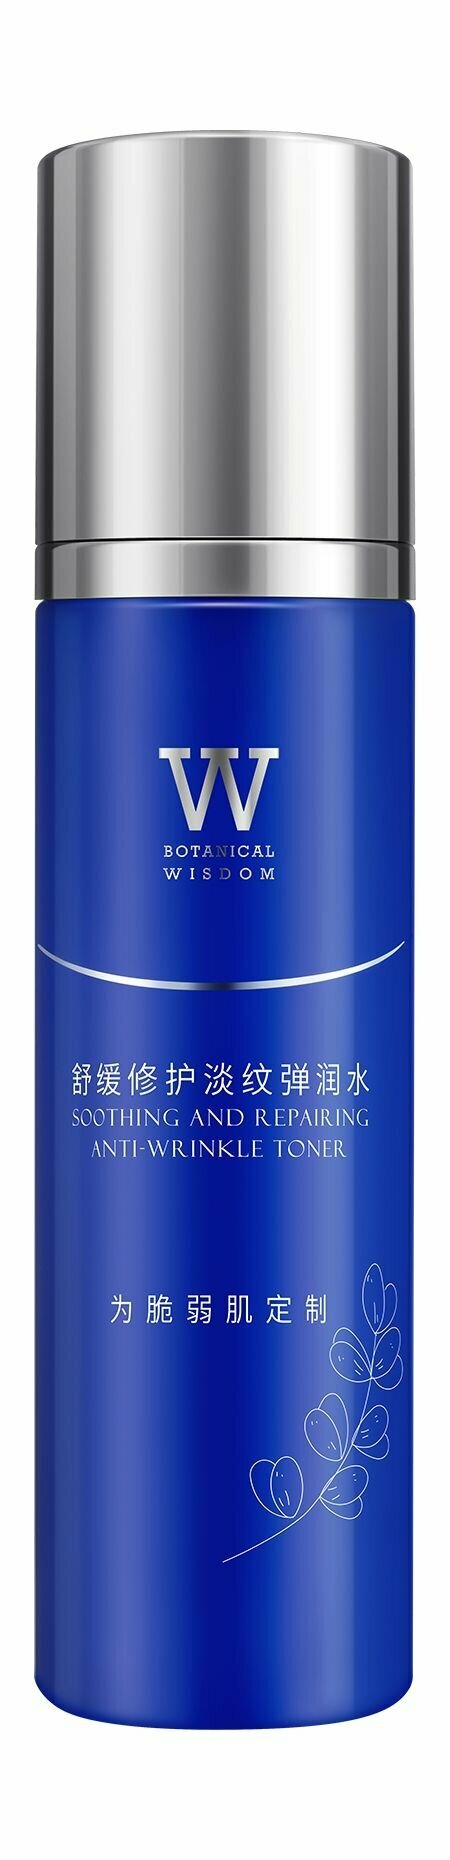 Успокаивающий тонер против морщин для чувствительной кожи лица / Botanical Wisdom Soothing and Repairing Anti-Wrinkle Toner